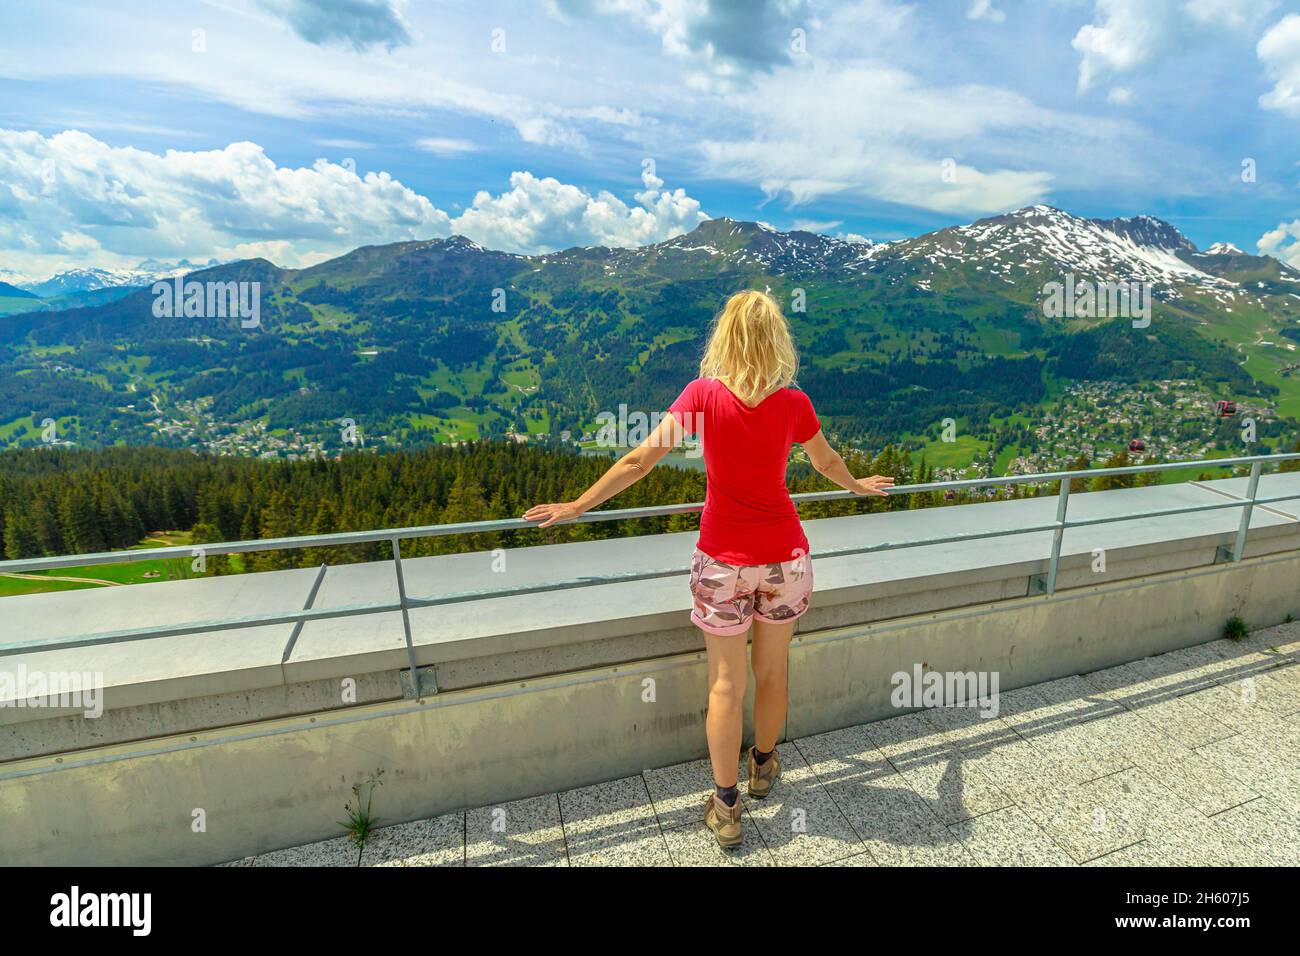 Frau im Parpaner Rothorn Berg der Schweiz. Schweizer Seilbahnstation Lenzerheide - Scharmoin der Region Albula im Kanton Graubünden. Stockfoto